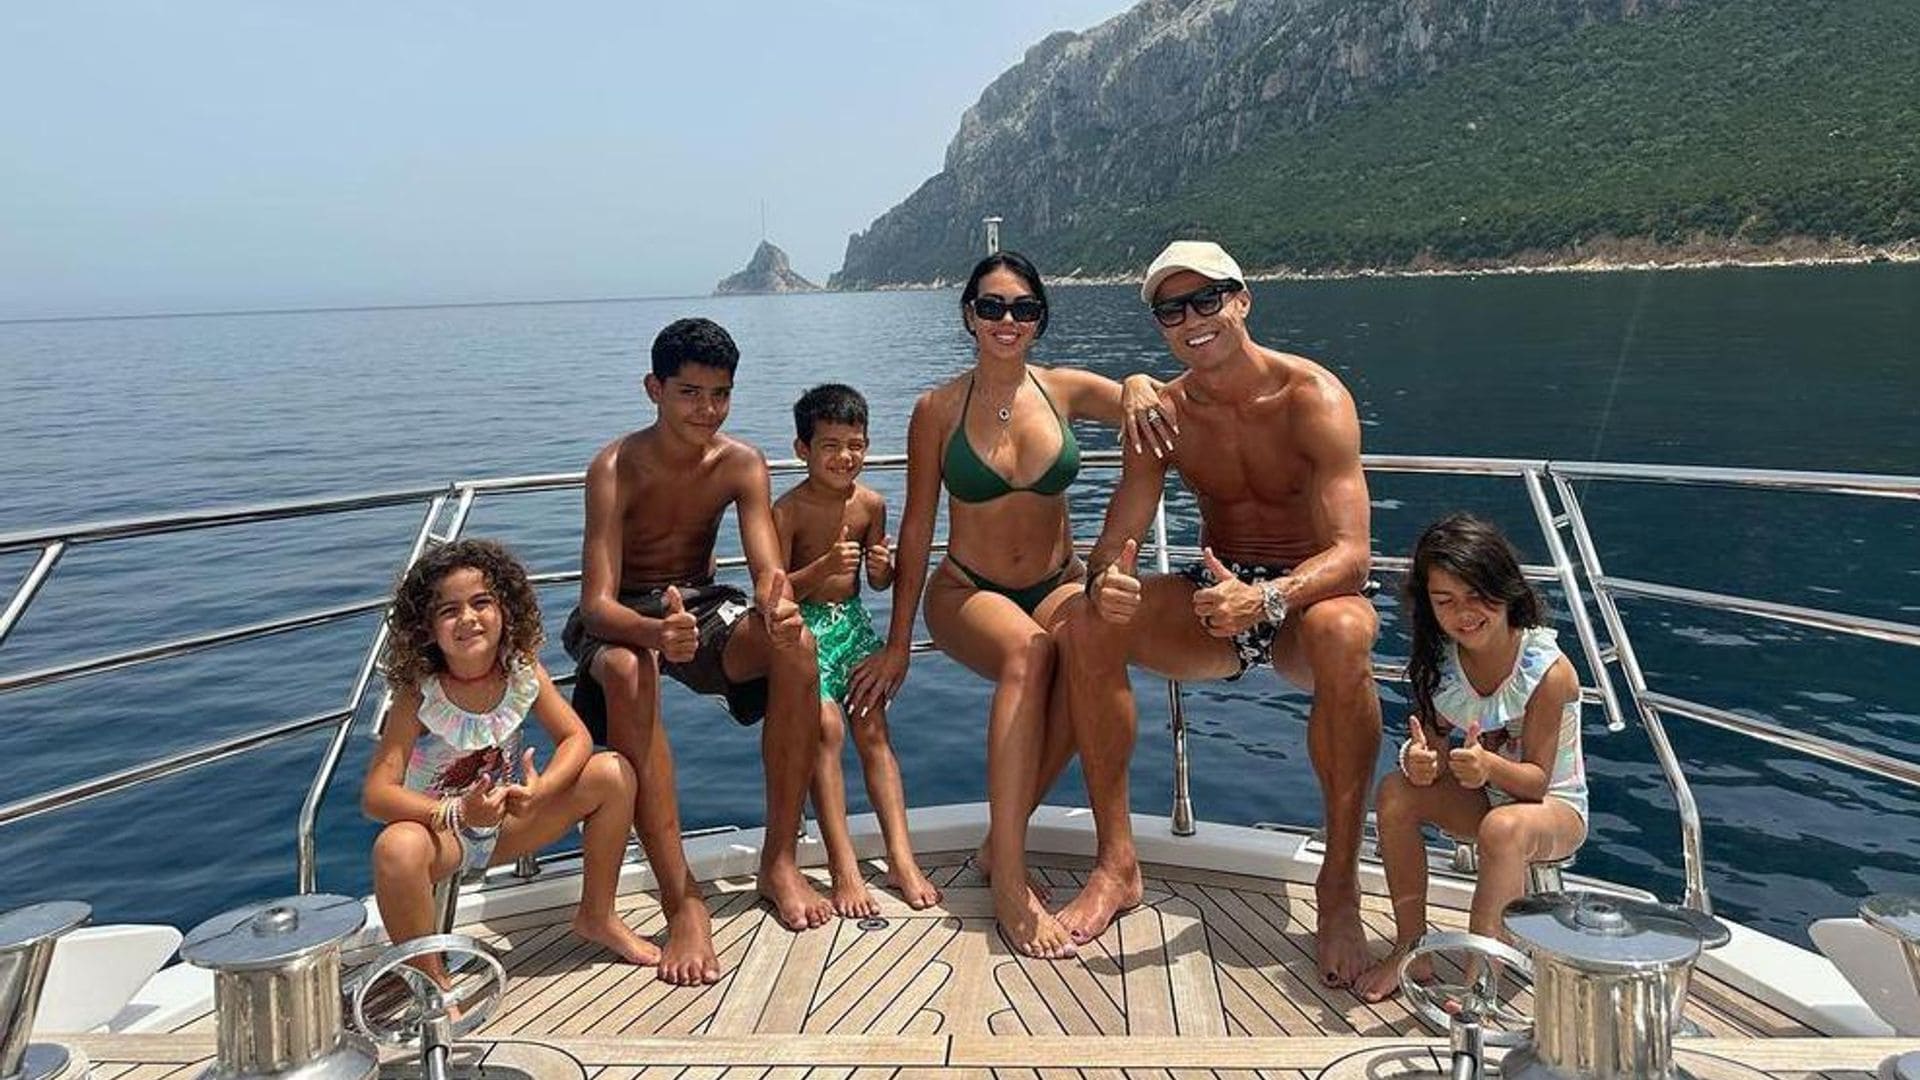 Vacaciones a todo lujo: Cristiano Ronaldo y Georgina Rodríguez disfrutan con sus hijos en un yate